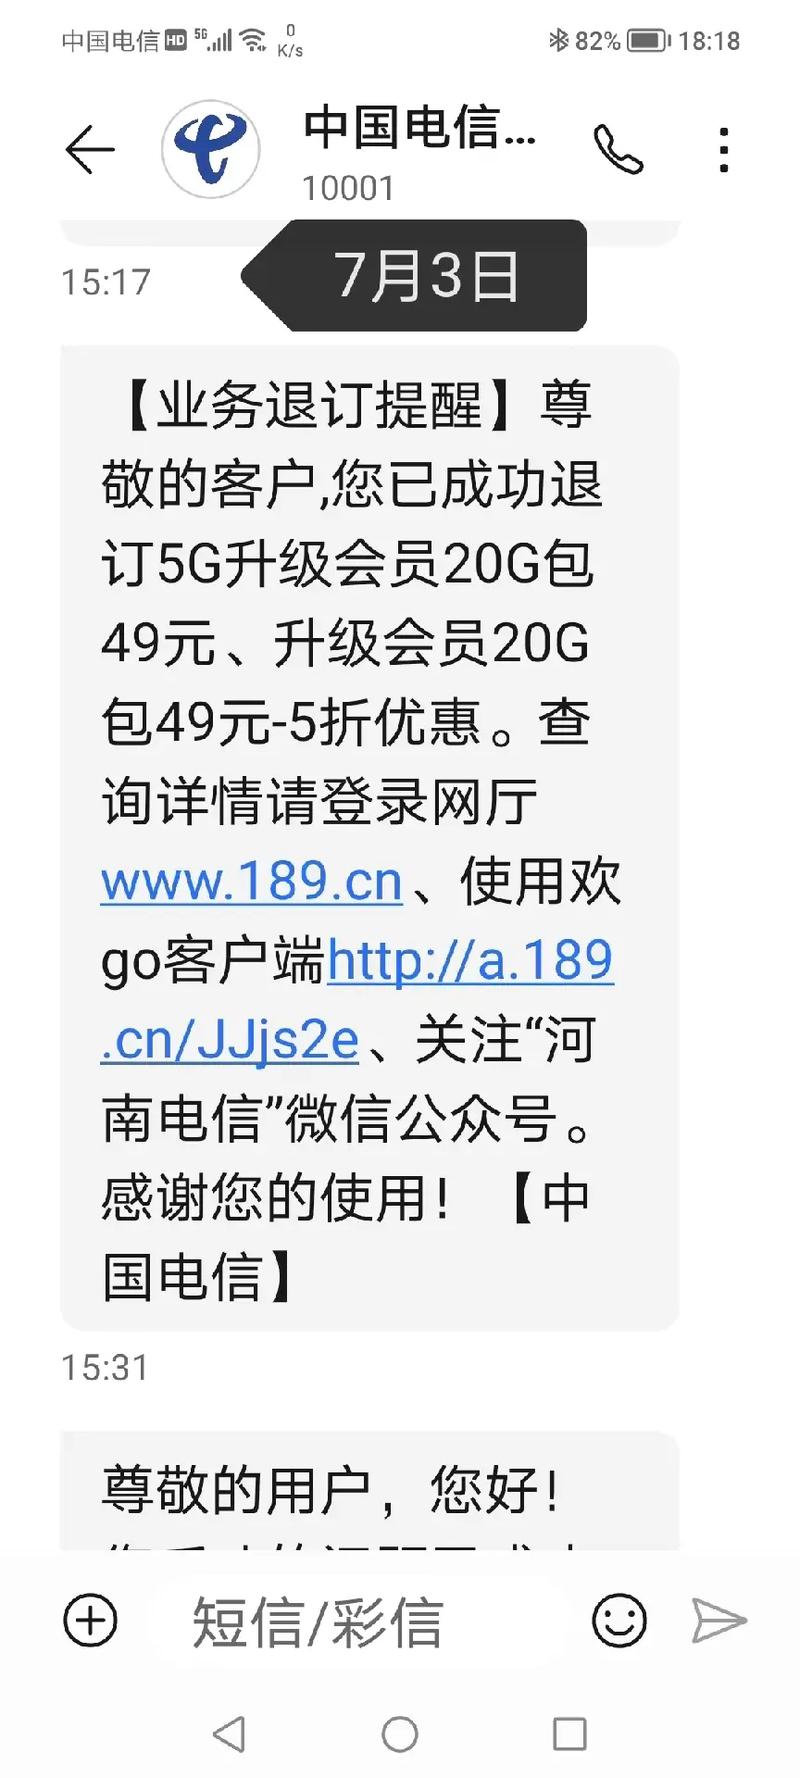 如果你选择了中国电信,请接受电信欺骗.7月3日收到手机套餐升 - 抖音